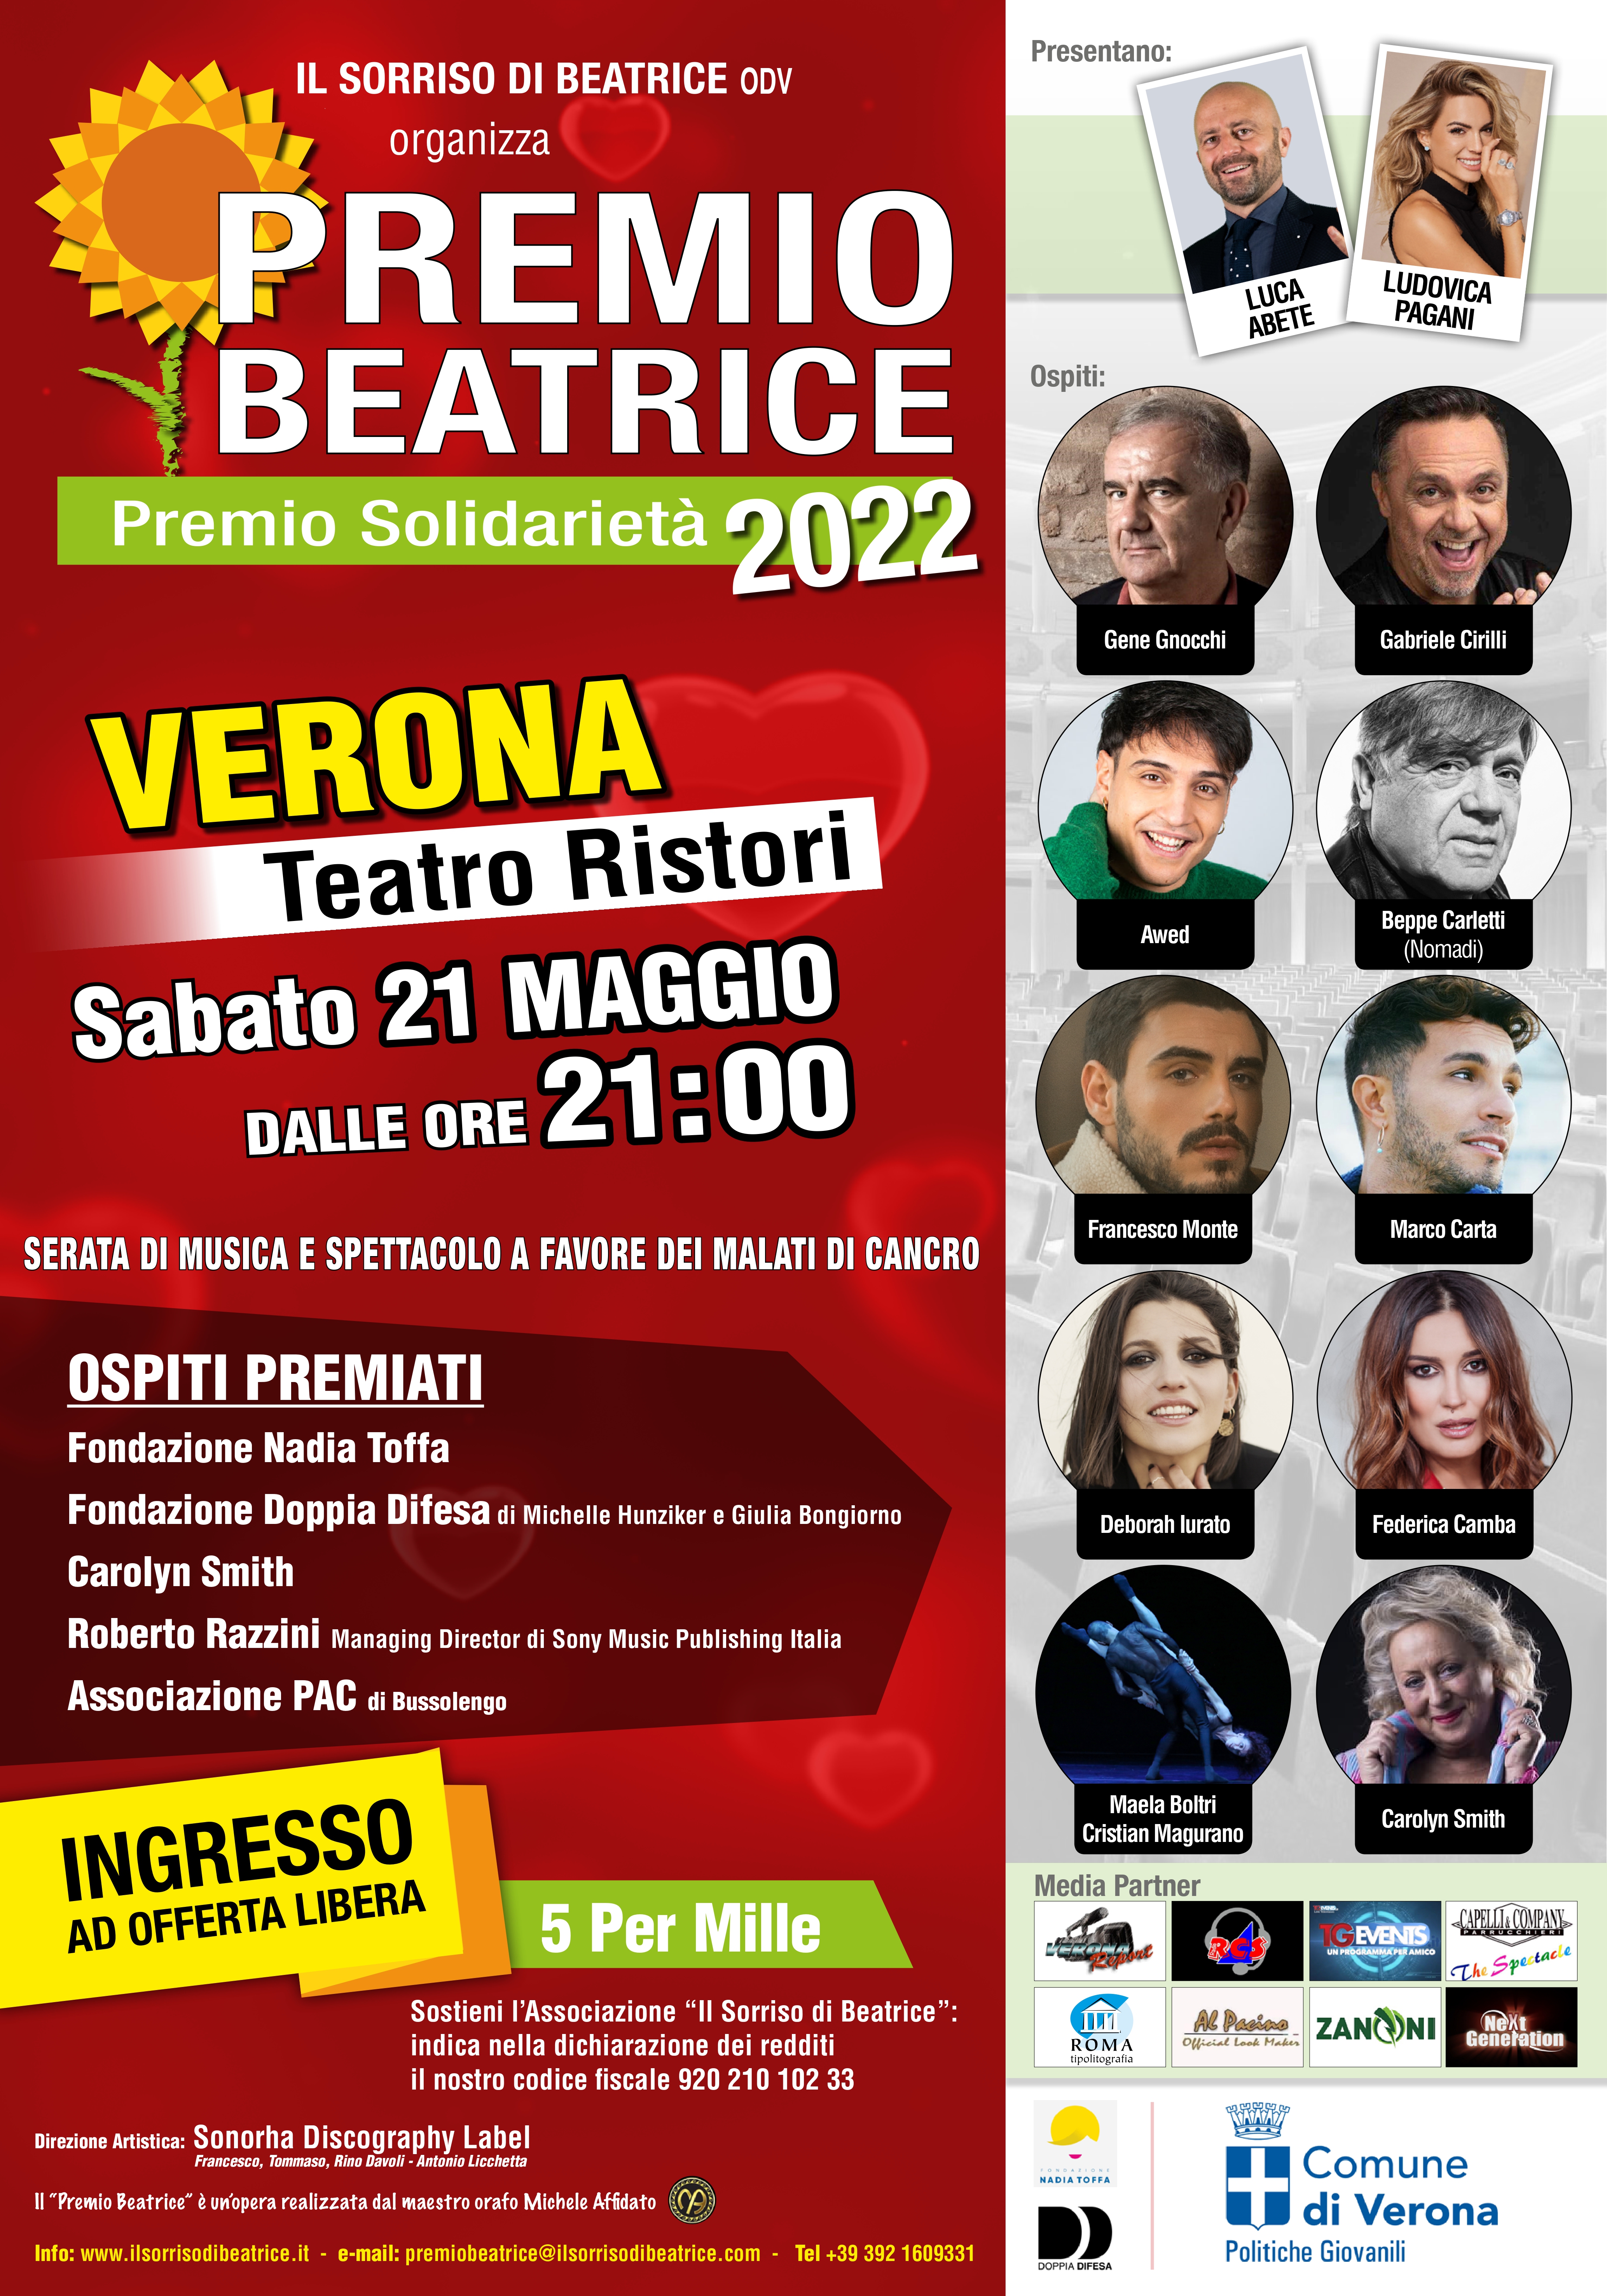 PREMIO BEATRICE 2022 con il patrocinio del Comune di Verona – Politiche Giovanili